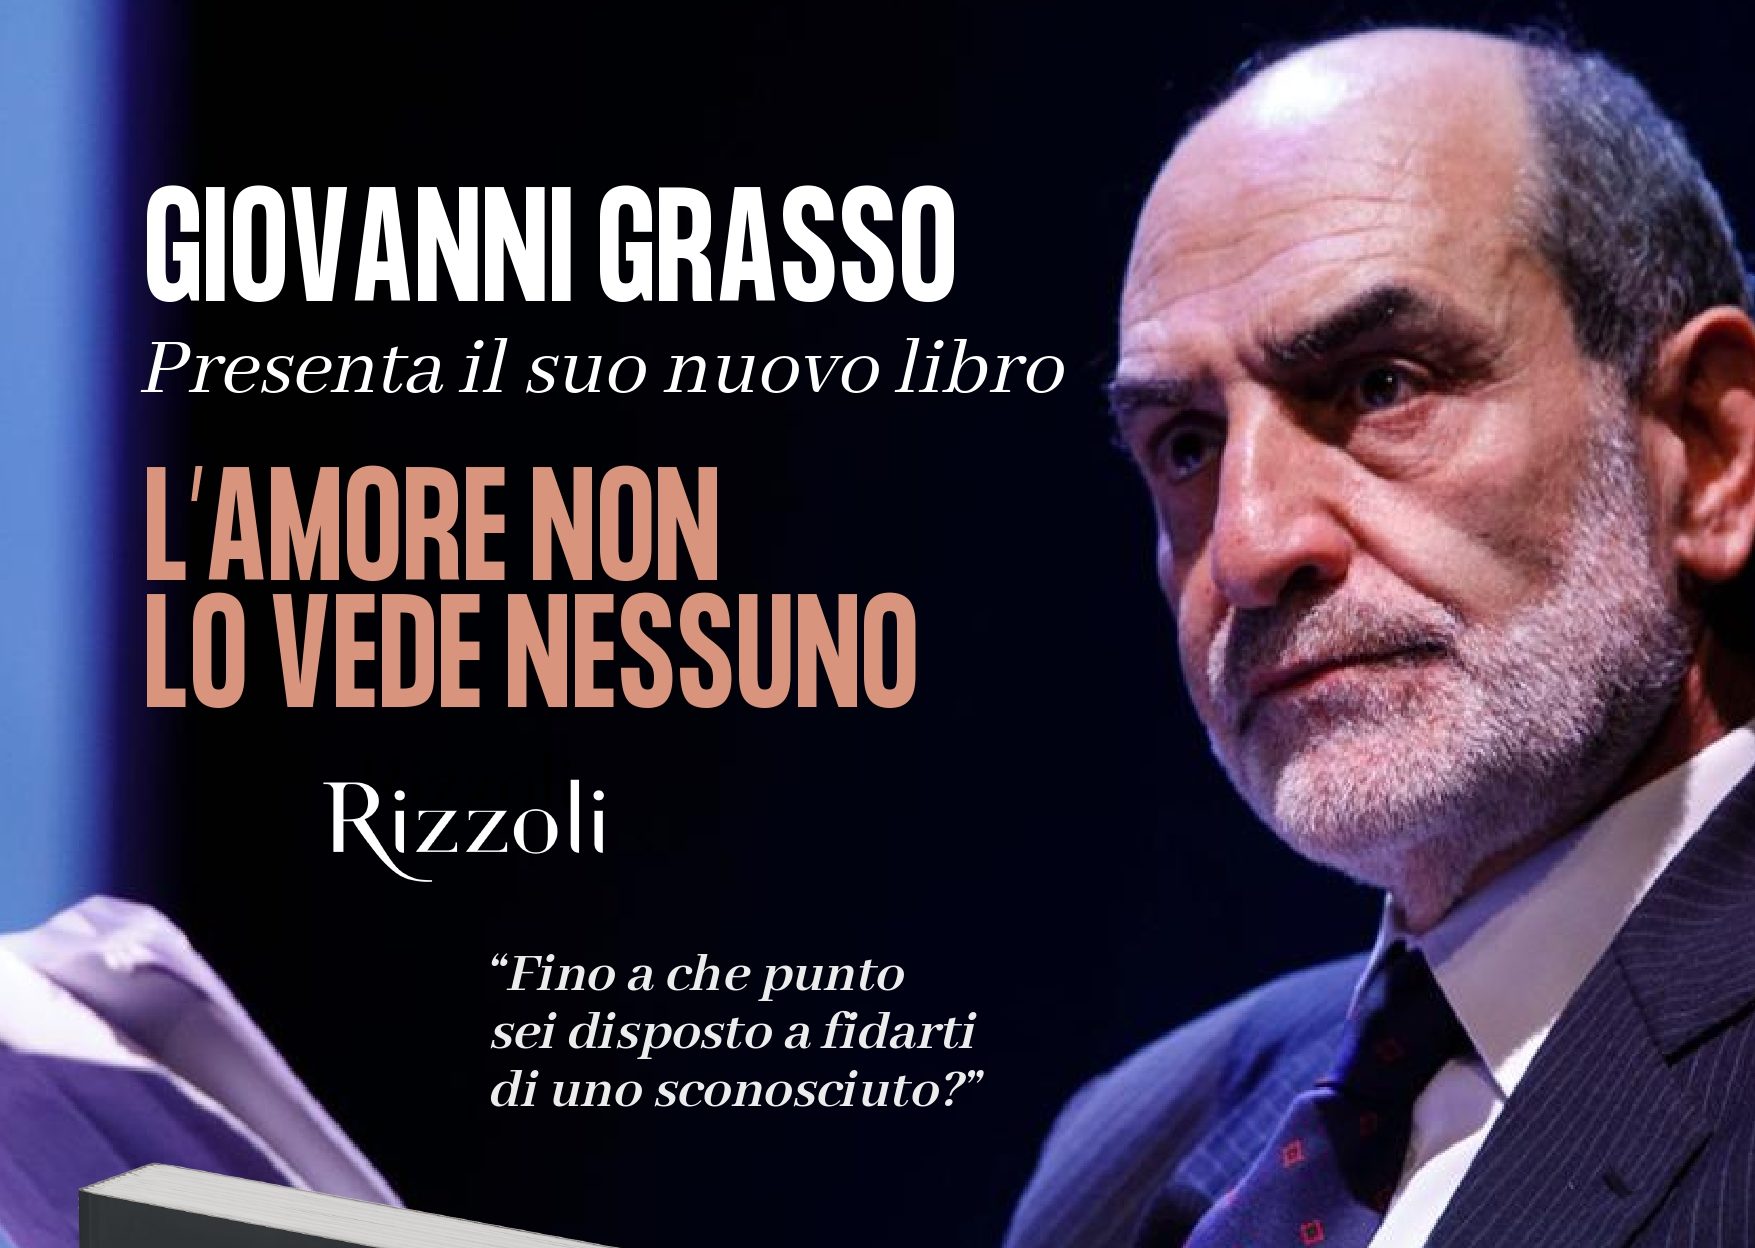 Frosinone / Giovanni Grasso presenta il suo ultimo libro  “L’amore non lo vede nessuno”